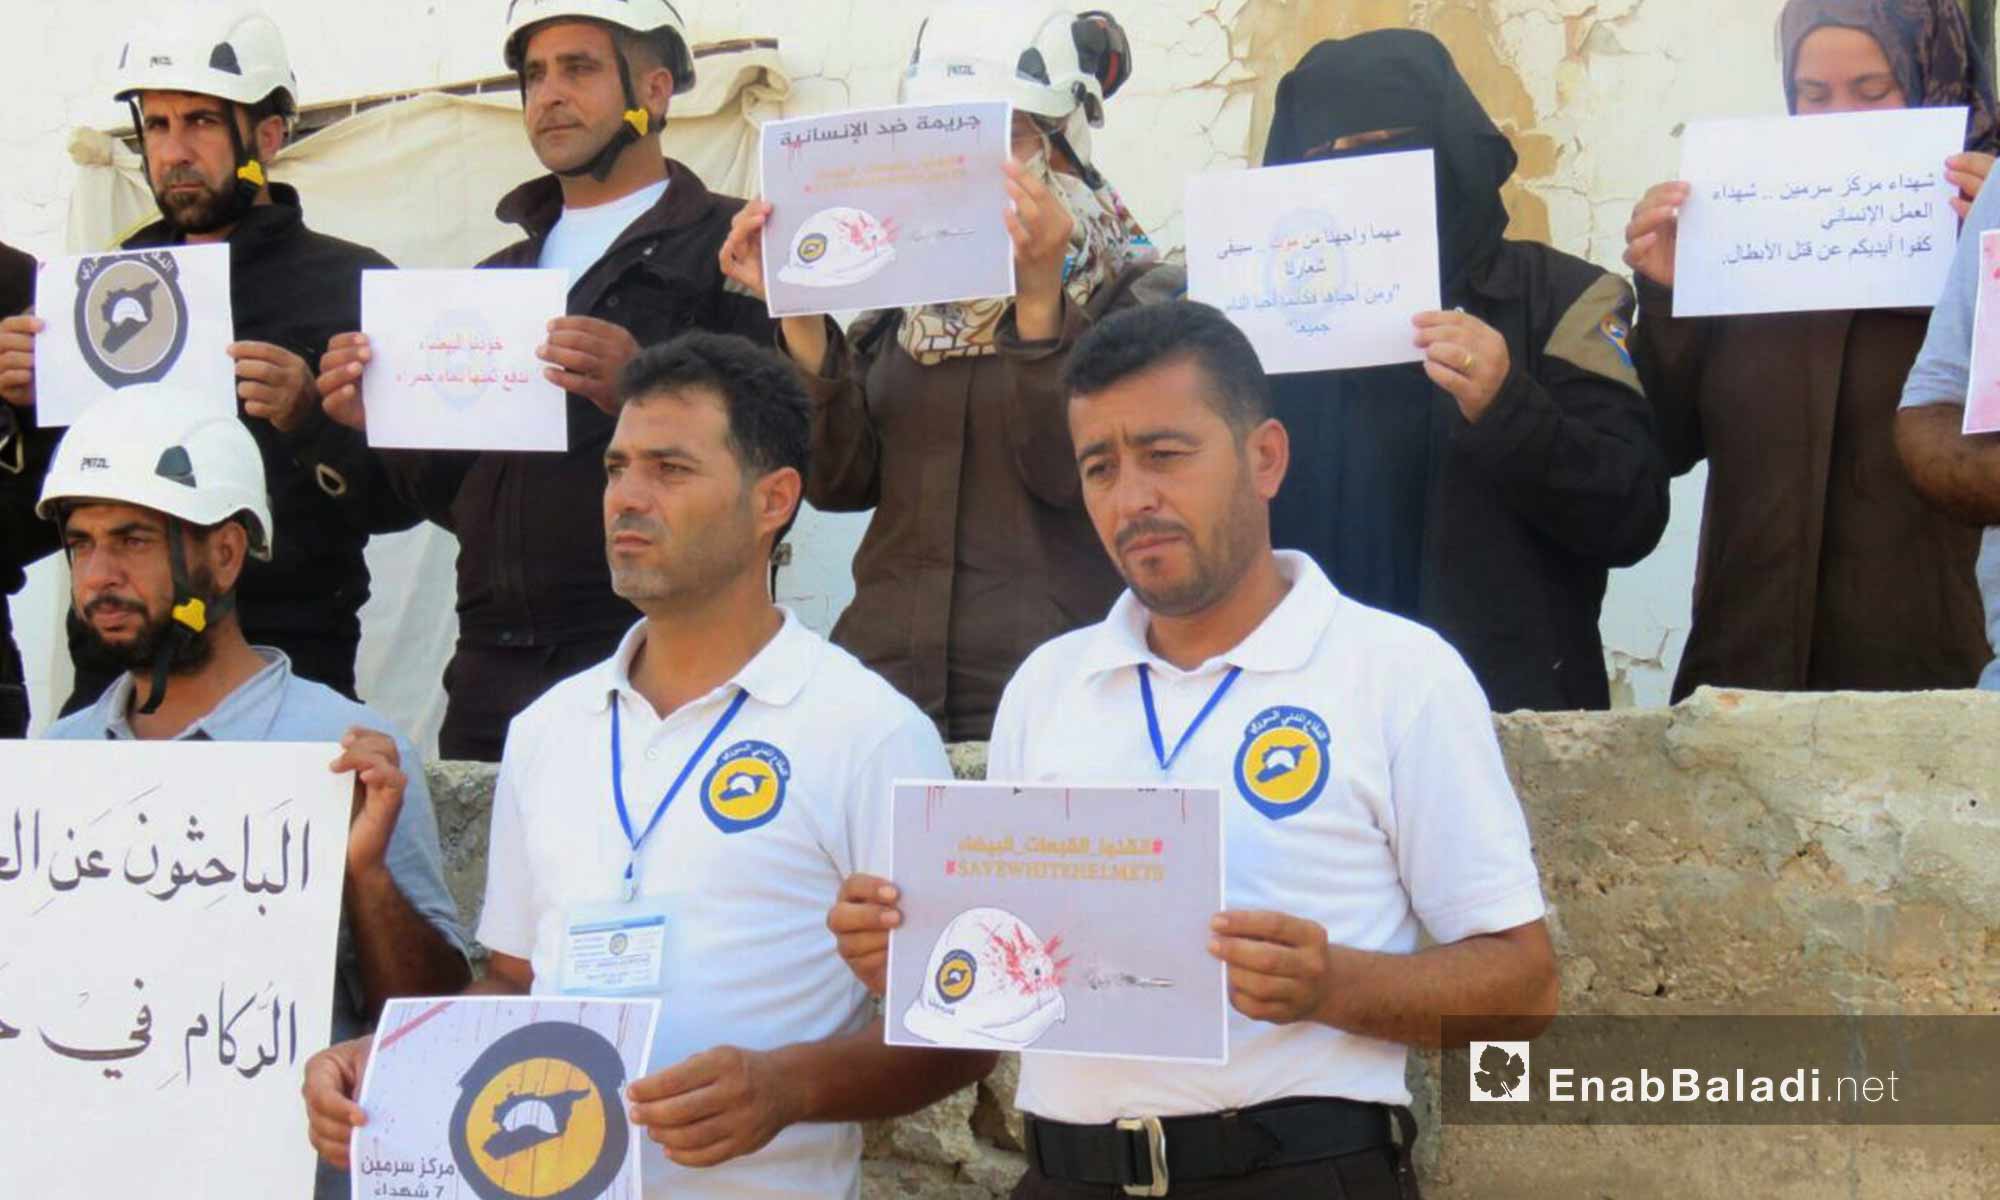 وقفة تضامنية لعناصر من الدفاع المدني العامل في ريف حماة تنديدًا بمجزرة بحق عناصر من المنظمة في سرمين - 13 آب 2017 (عنب بلدي)